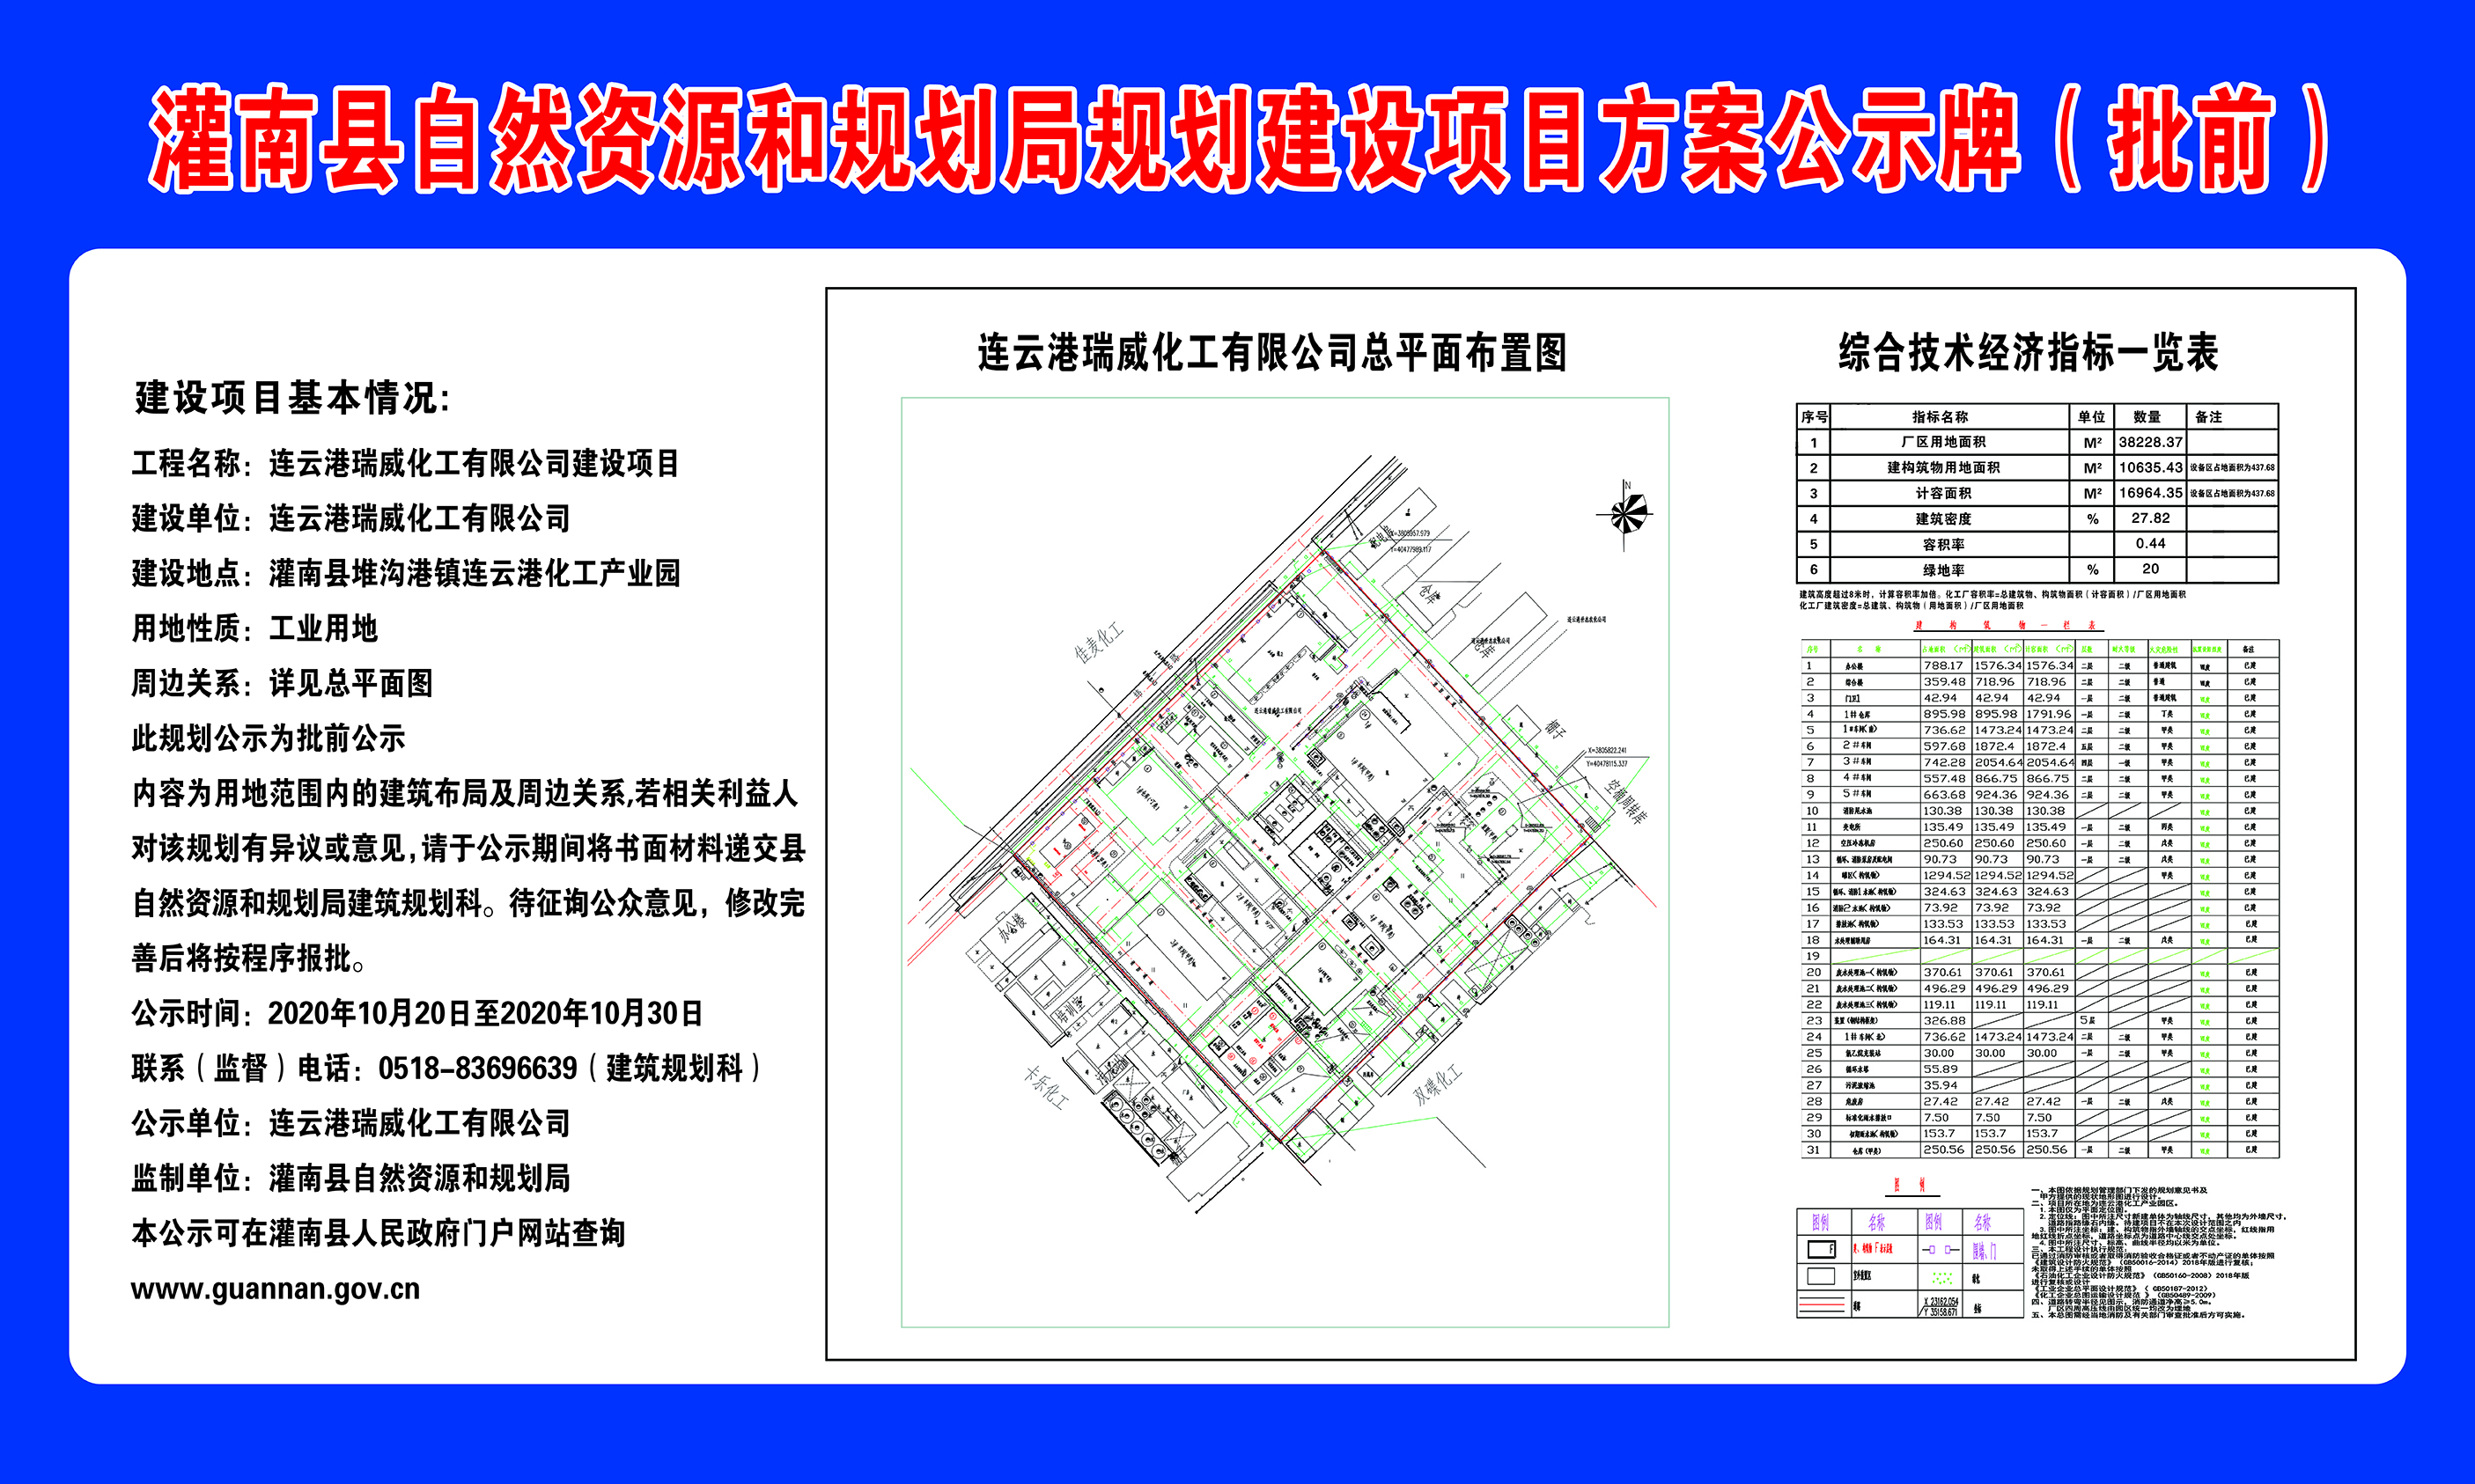 1连云港瑞威化工有限公司规划建设项目方案公示牌（批前）.jpg